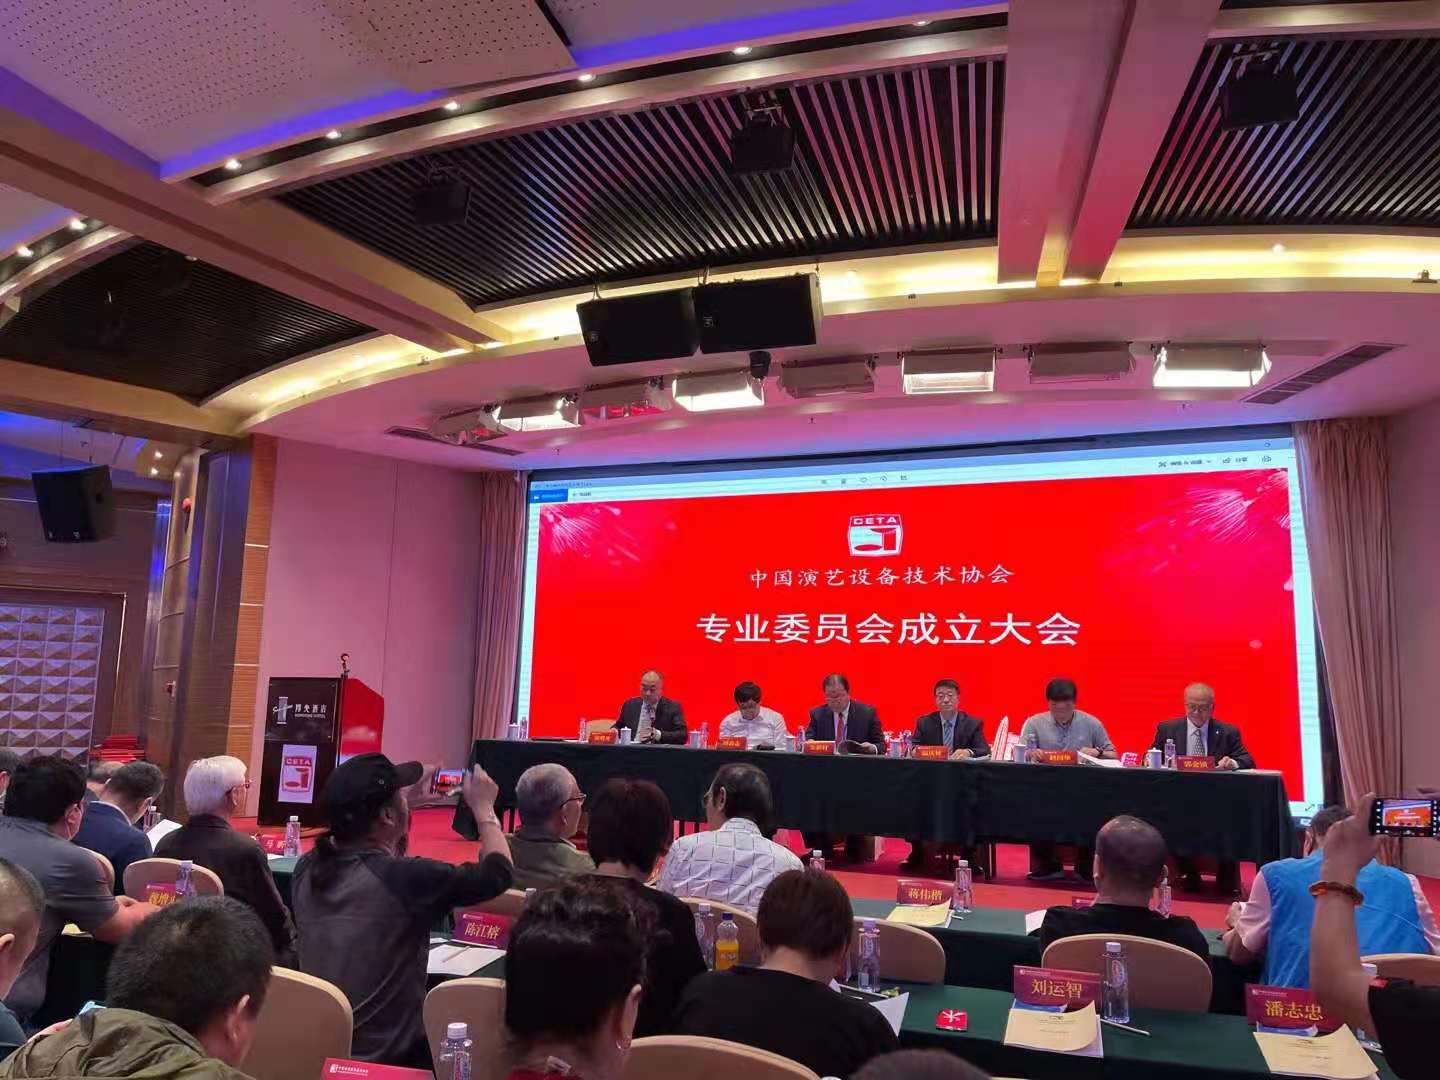 中国演艺设备技术协会专业委员会换届成立大会顺利召开